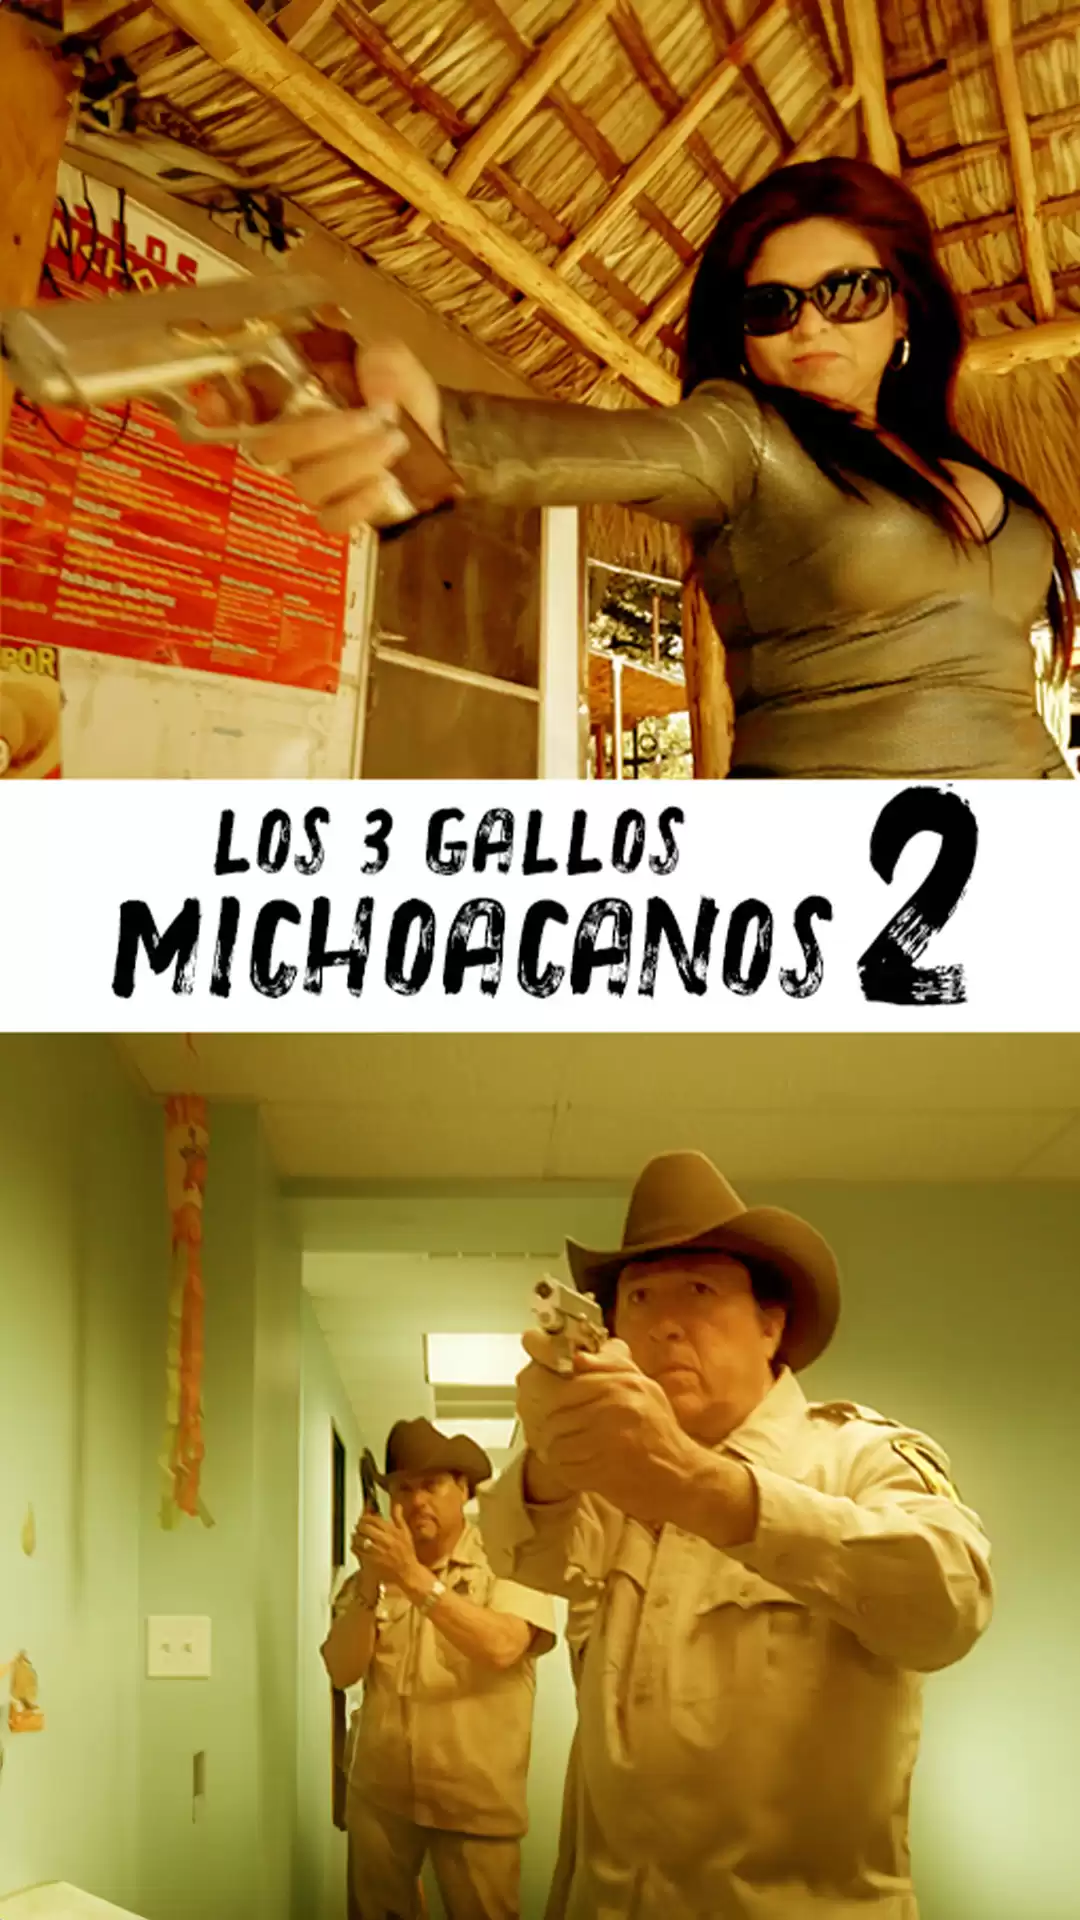 Los Tres Gallos Michoacanos